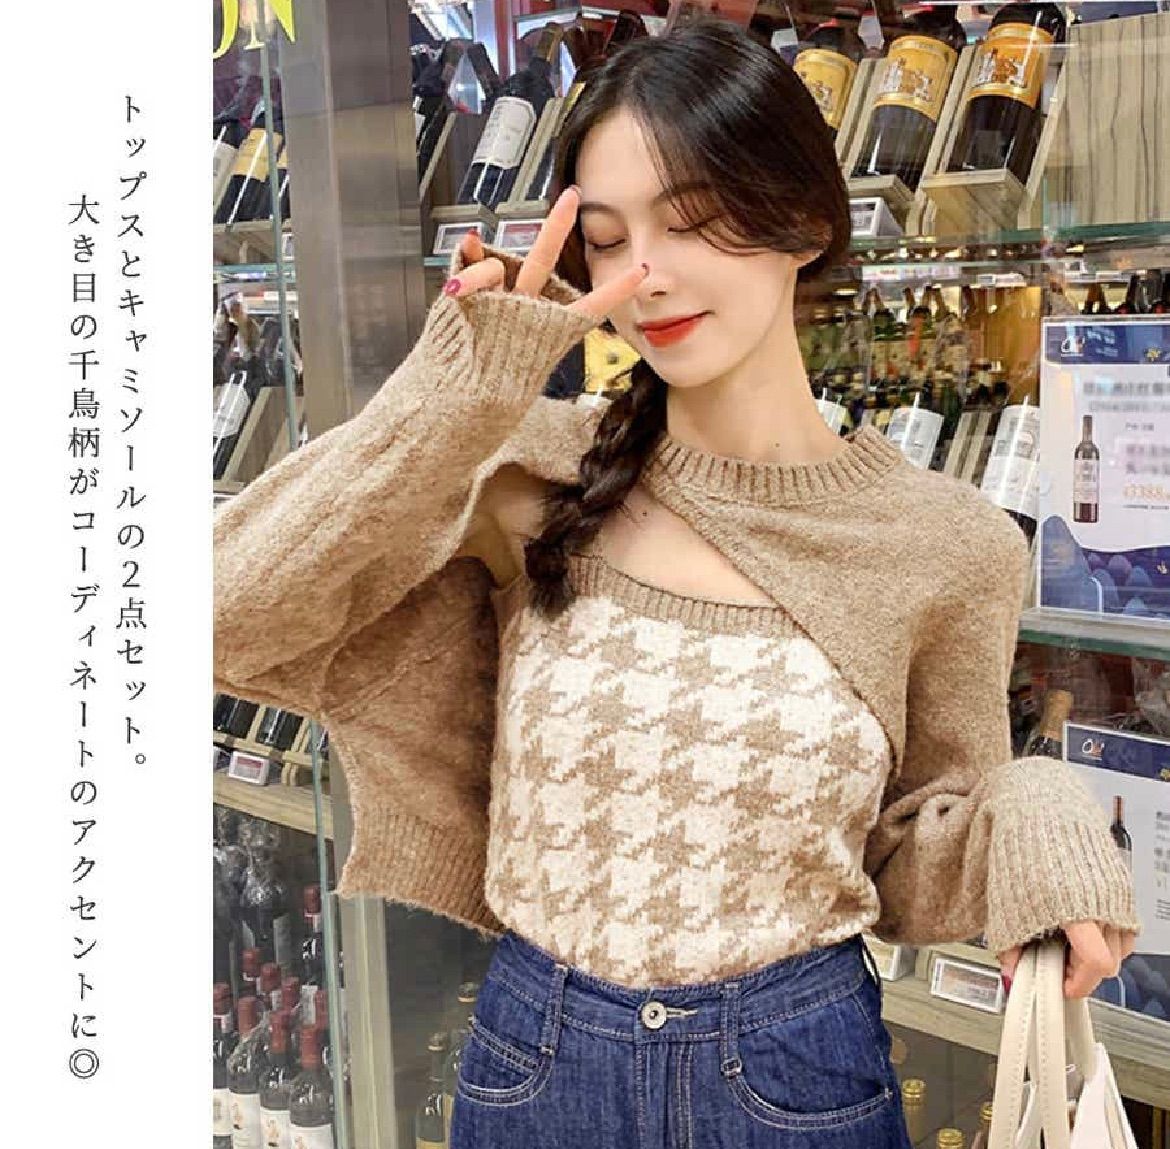 レディース DOUBLE STANDARD CLOTHING - セット ニット 千鳥の通販 by